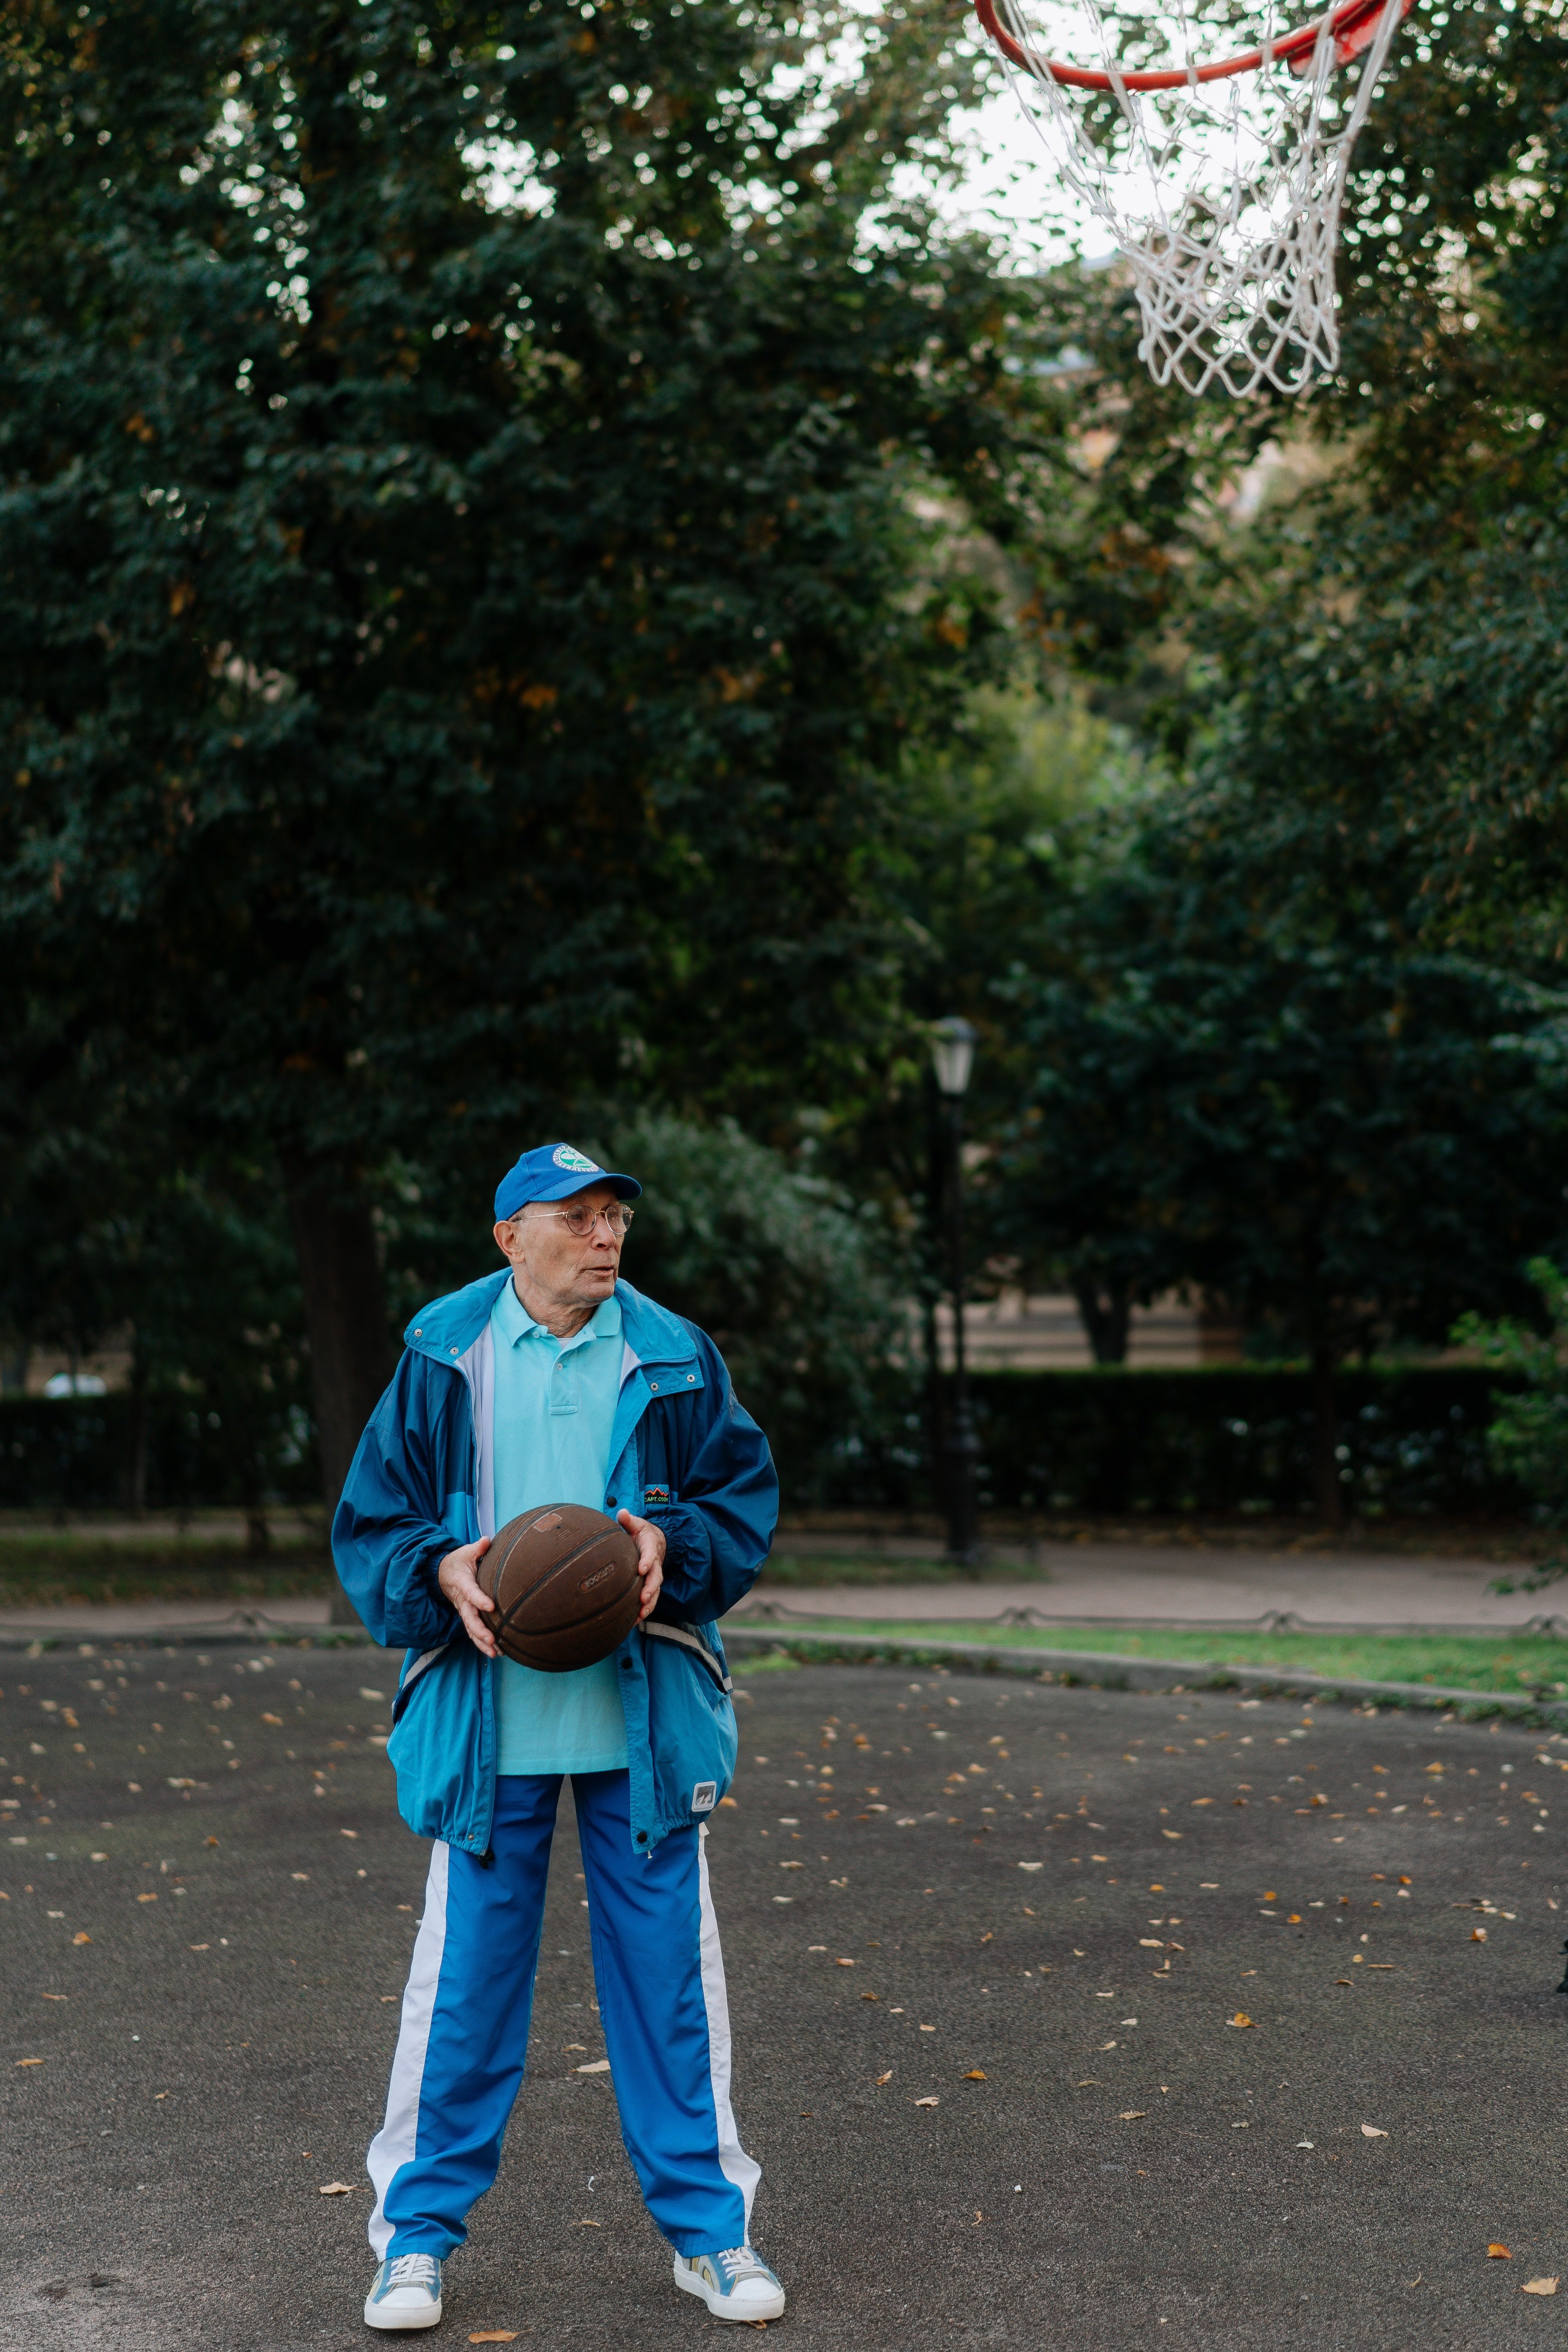 Anciano sostiene una pelota entre sus manos. | Foto: Pexels